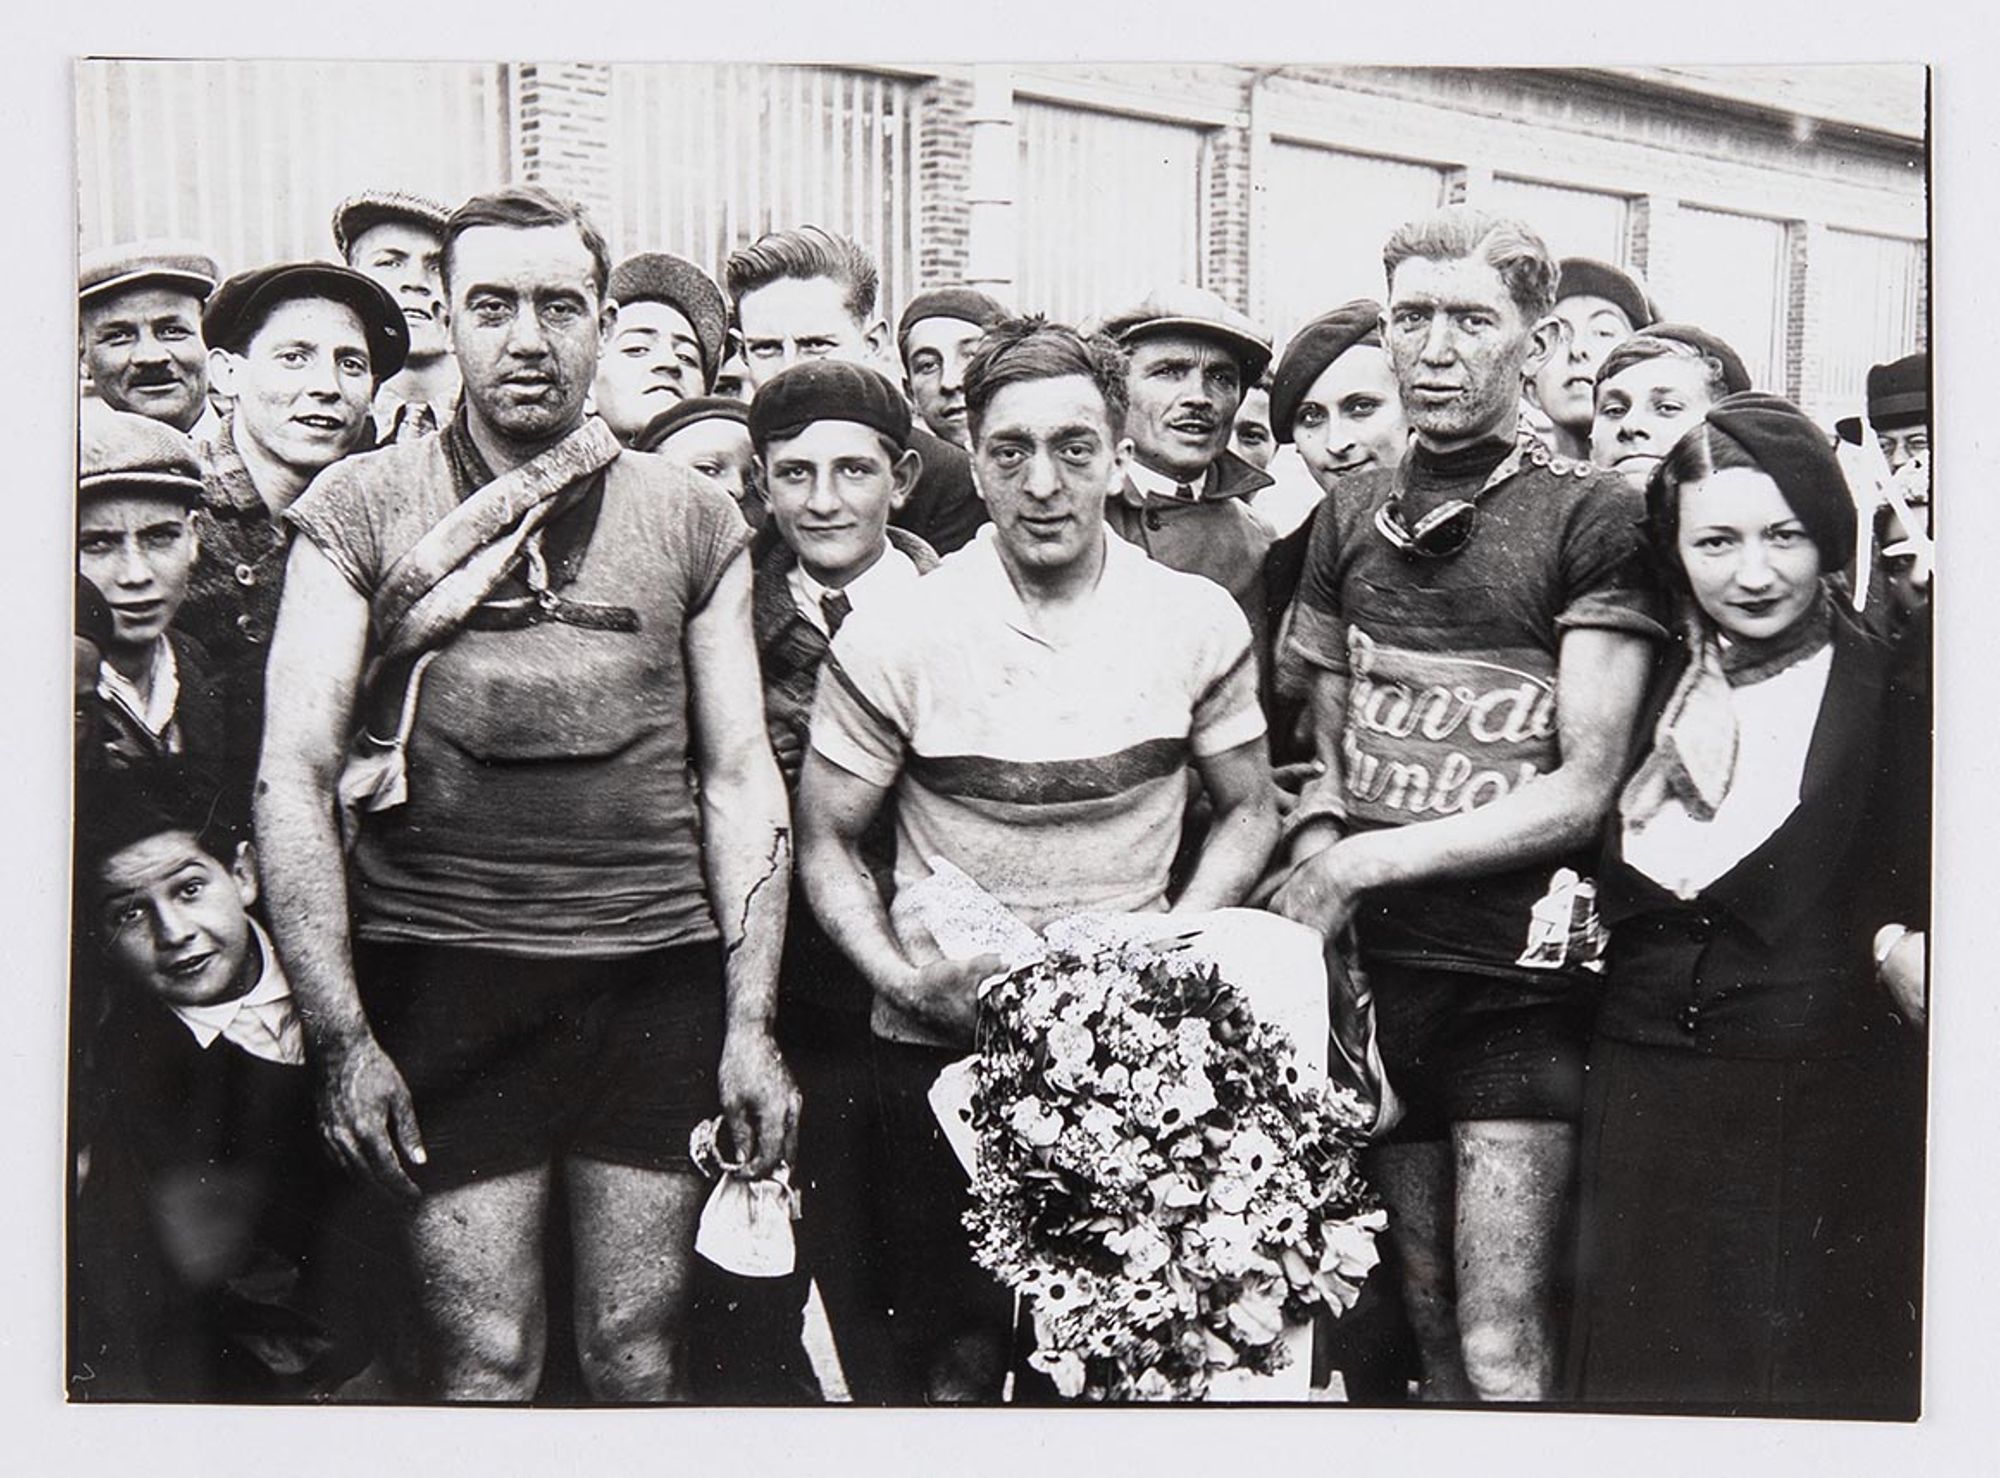 25 mai 1933. Prix Wonder organisé par l'Union Vélo Aube (U.V.A.). Photographie des vainqueurs à l'arrivée à Troyes, devant le café Pothier : Jack Cahen, au centre, premier, portant un bouquet de fleurs. René Lepeu, d'Auxerre, deuxième, à sa droite. J. Kru